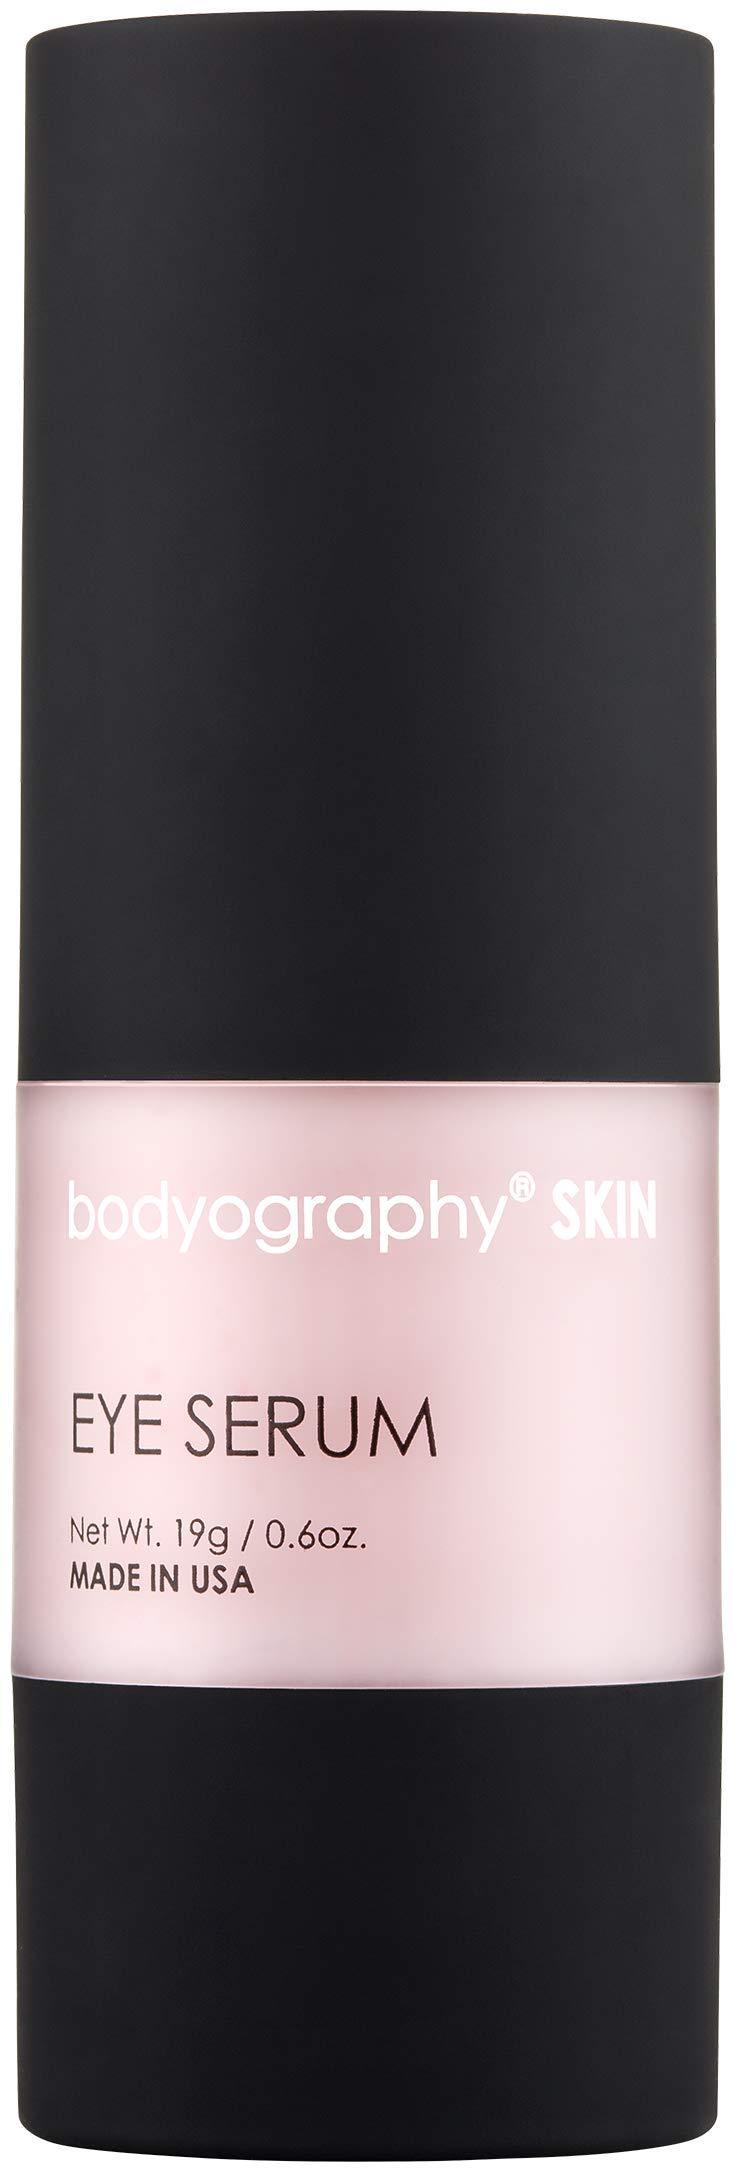 BODYOGRAPHY - Eye Serum with Powerful Antioxidants (0.6 oz) - BeesActive Australia